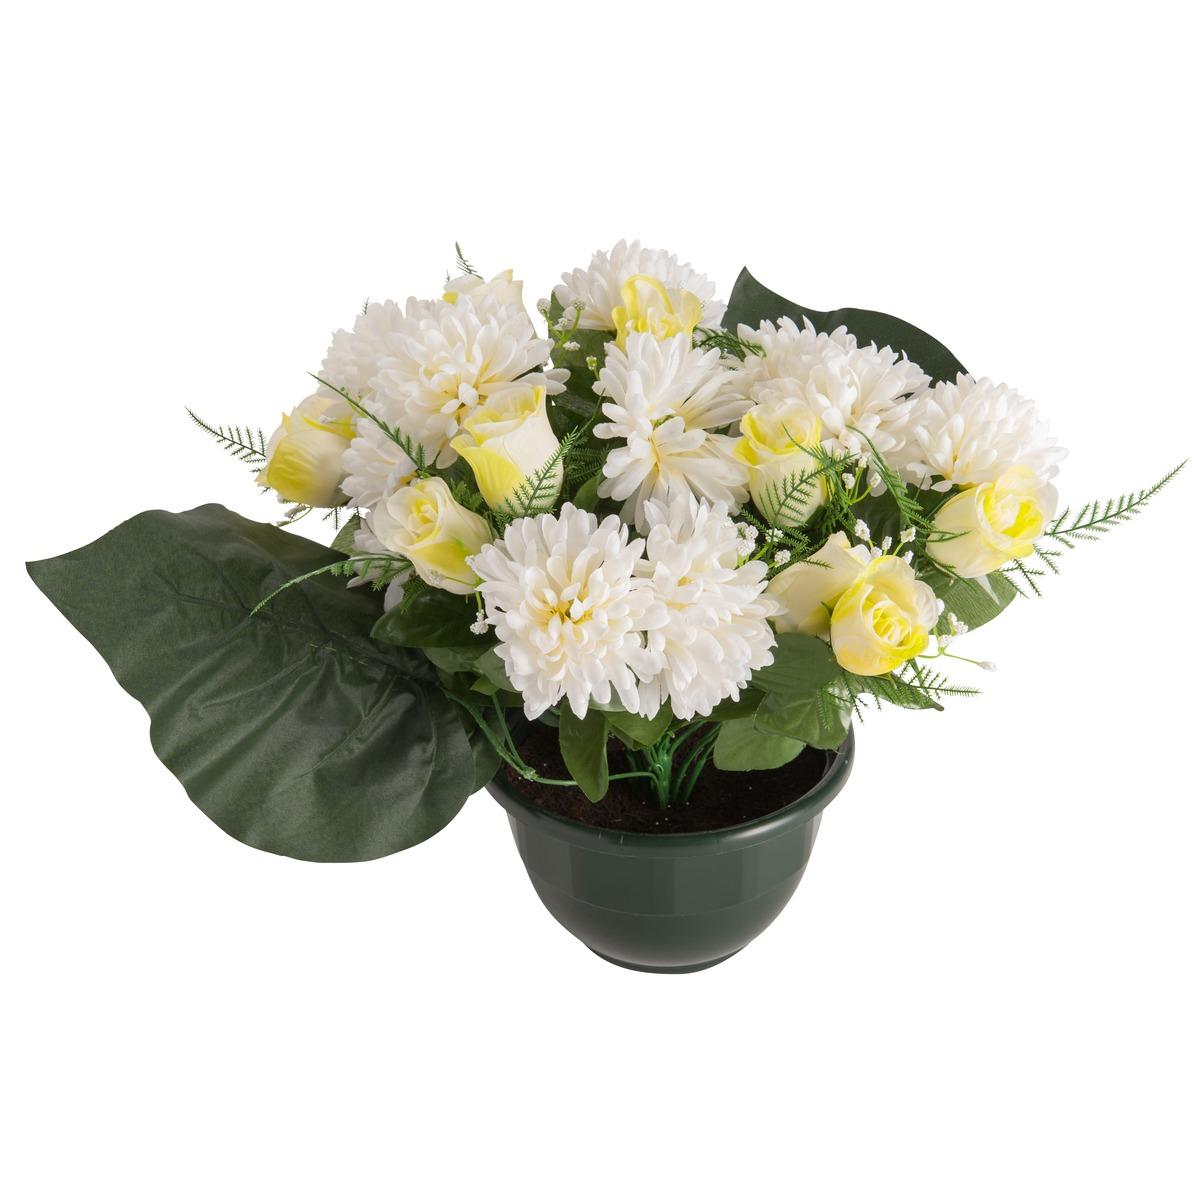 Coupe 24 roses et chrysanthème - Beige crème - 40 cm